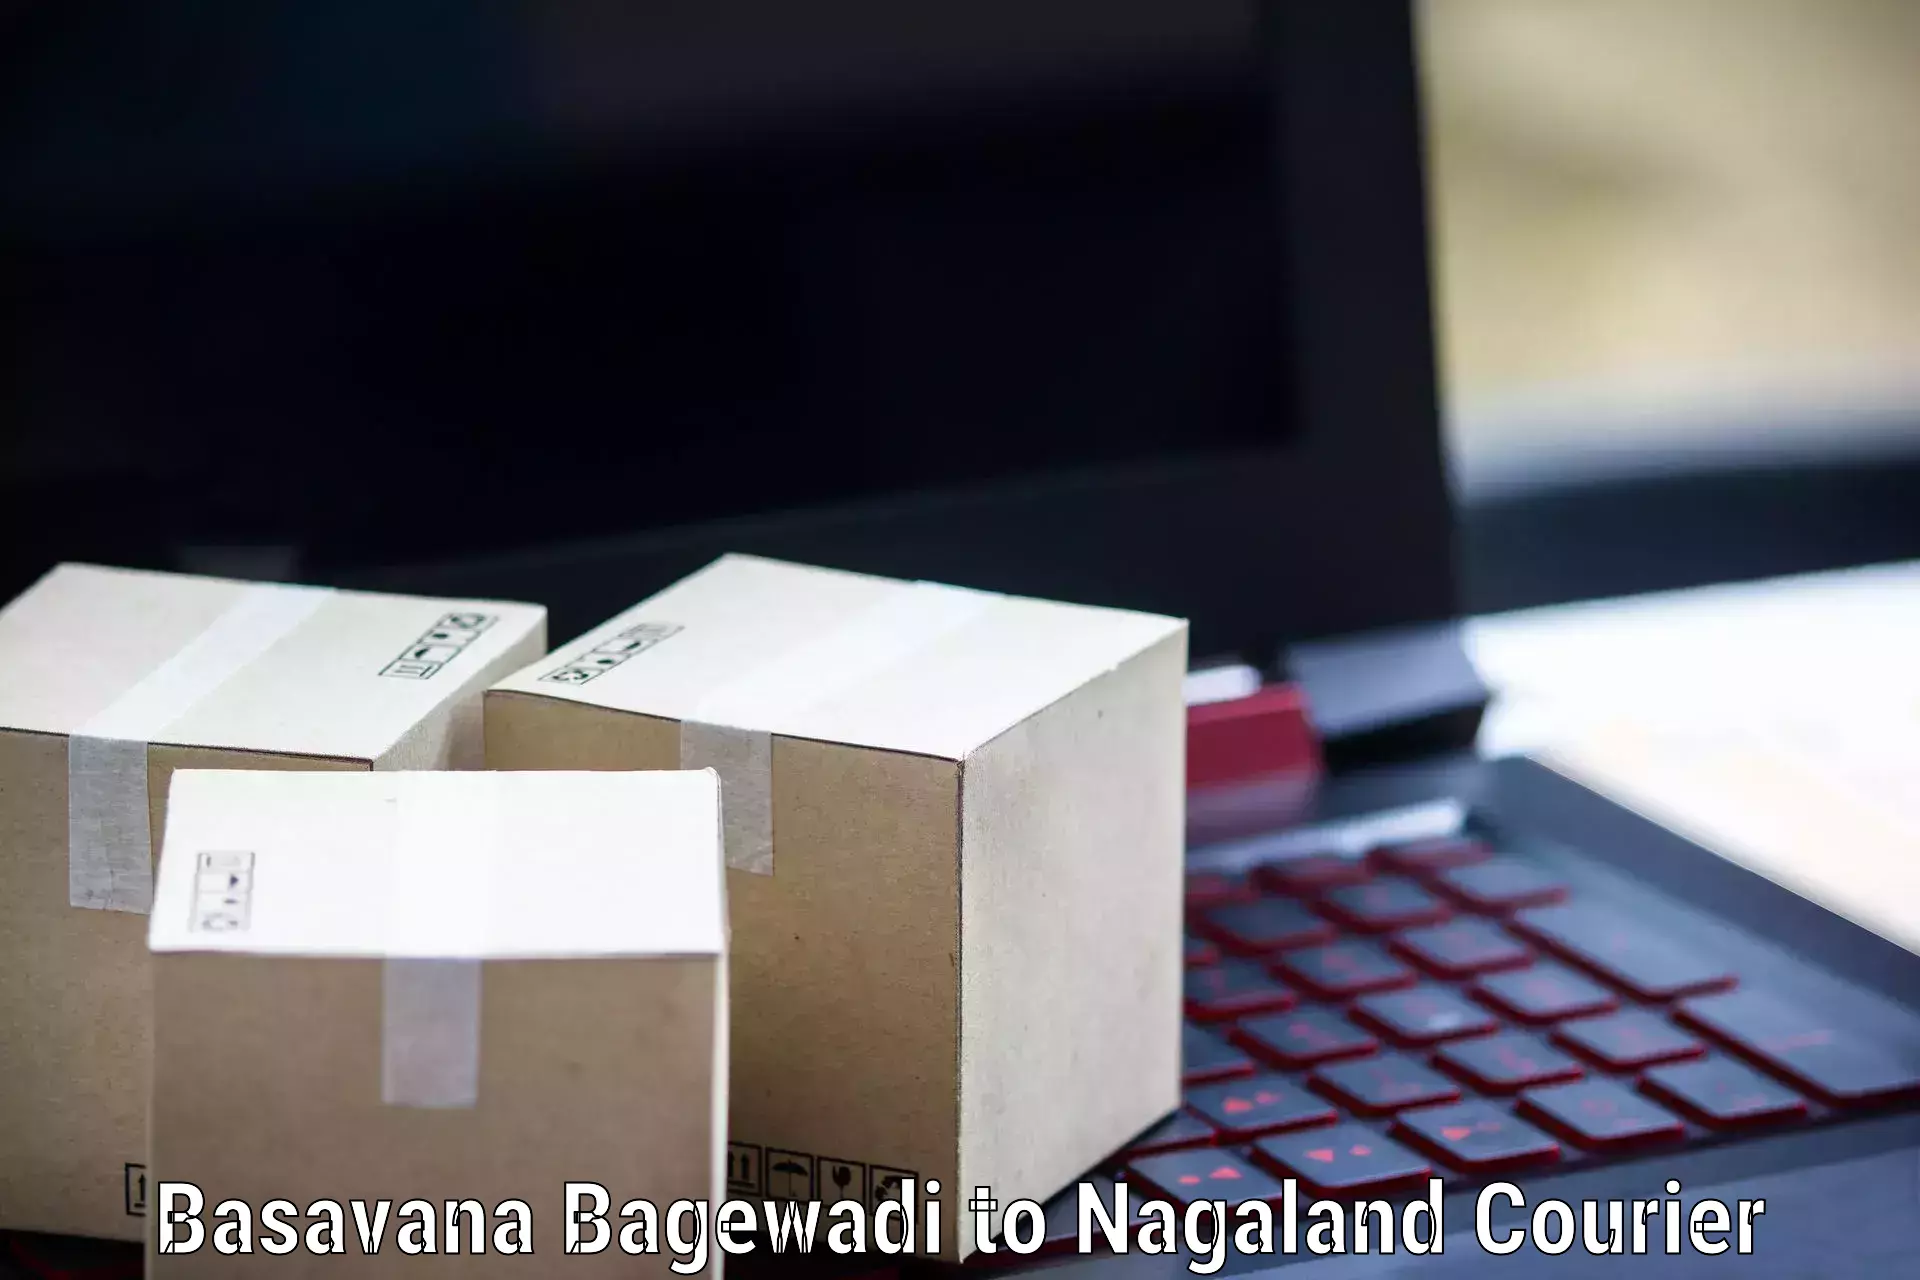 Large package courier Basavana Bagewadi to Nagaland